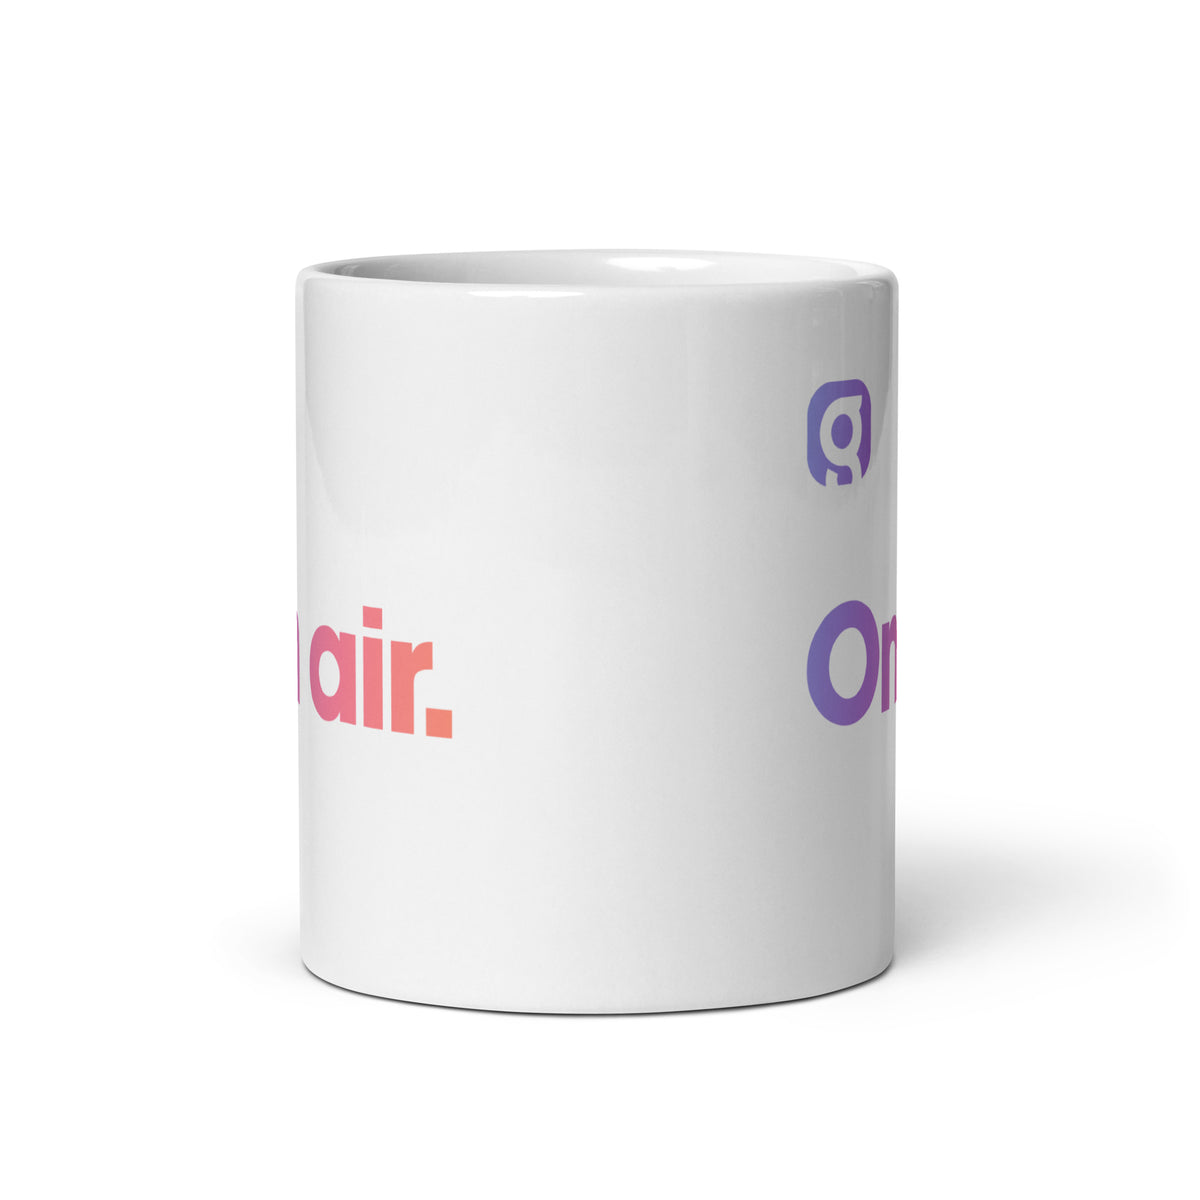 On Air! Mug - White